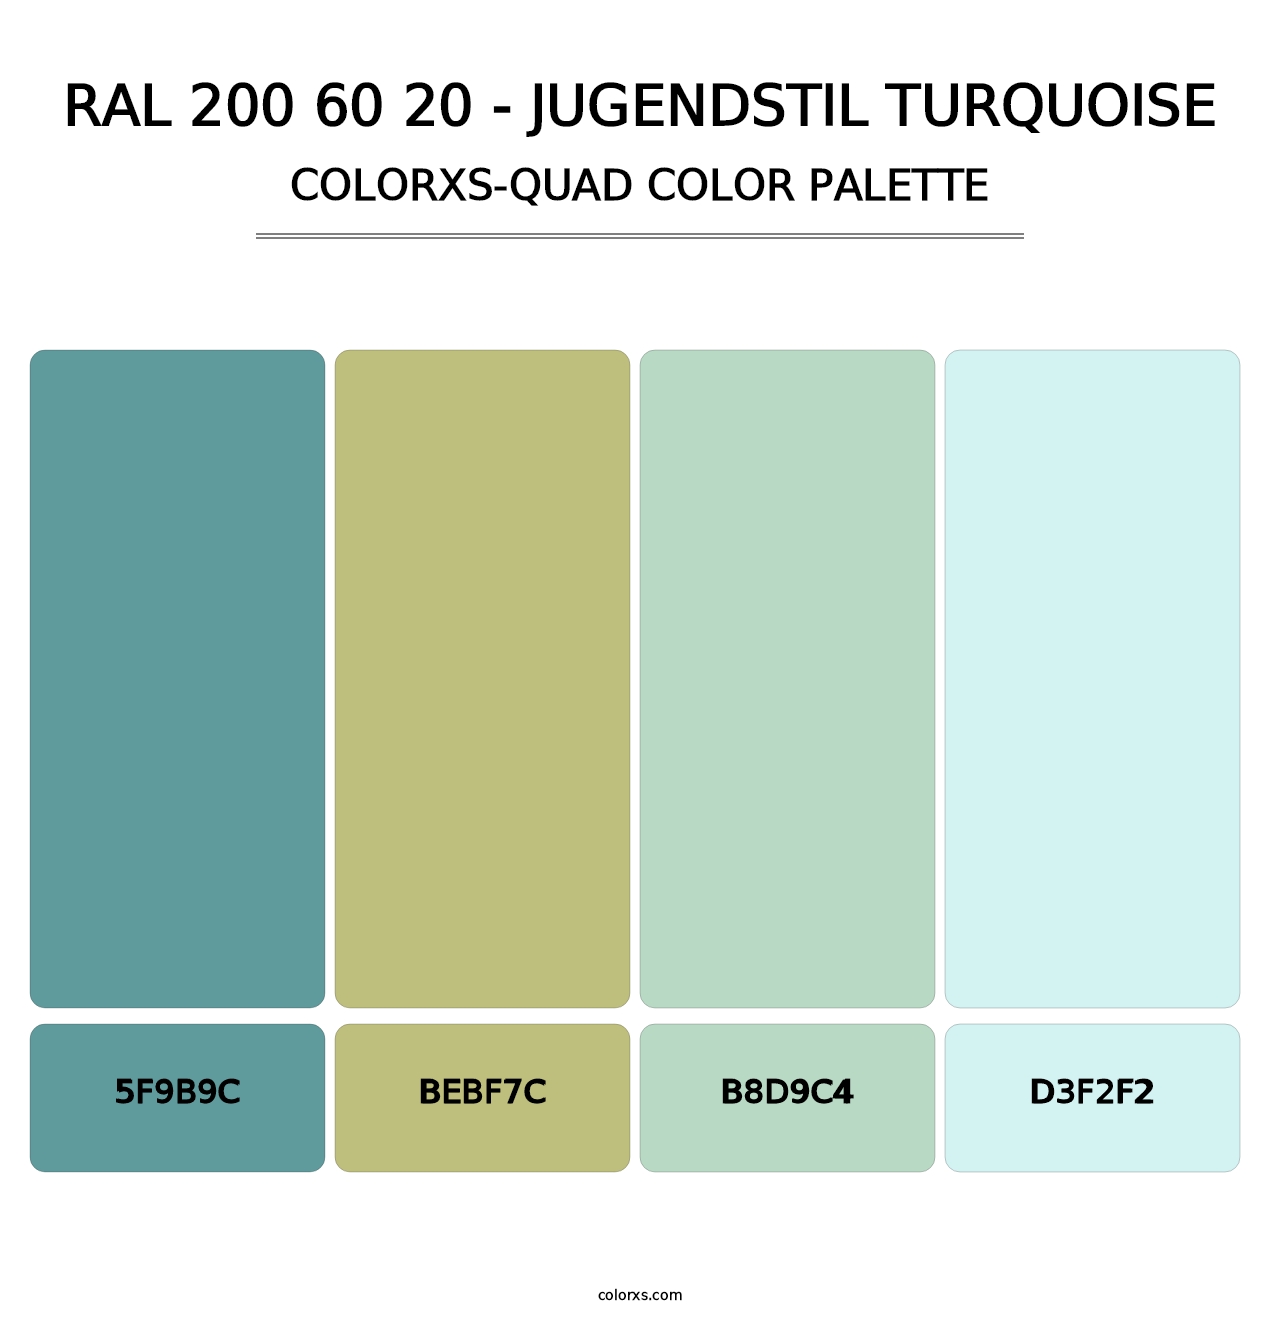 RAL 200 60 20 - Jugendstil Turquoise - Colorxs Quad Palette